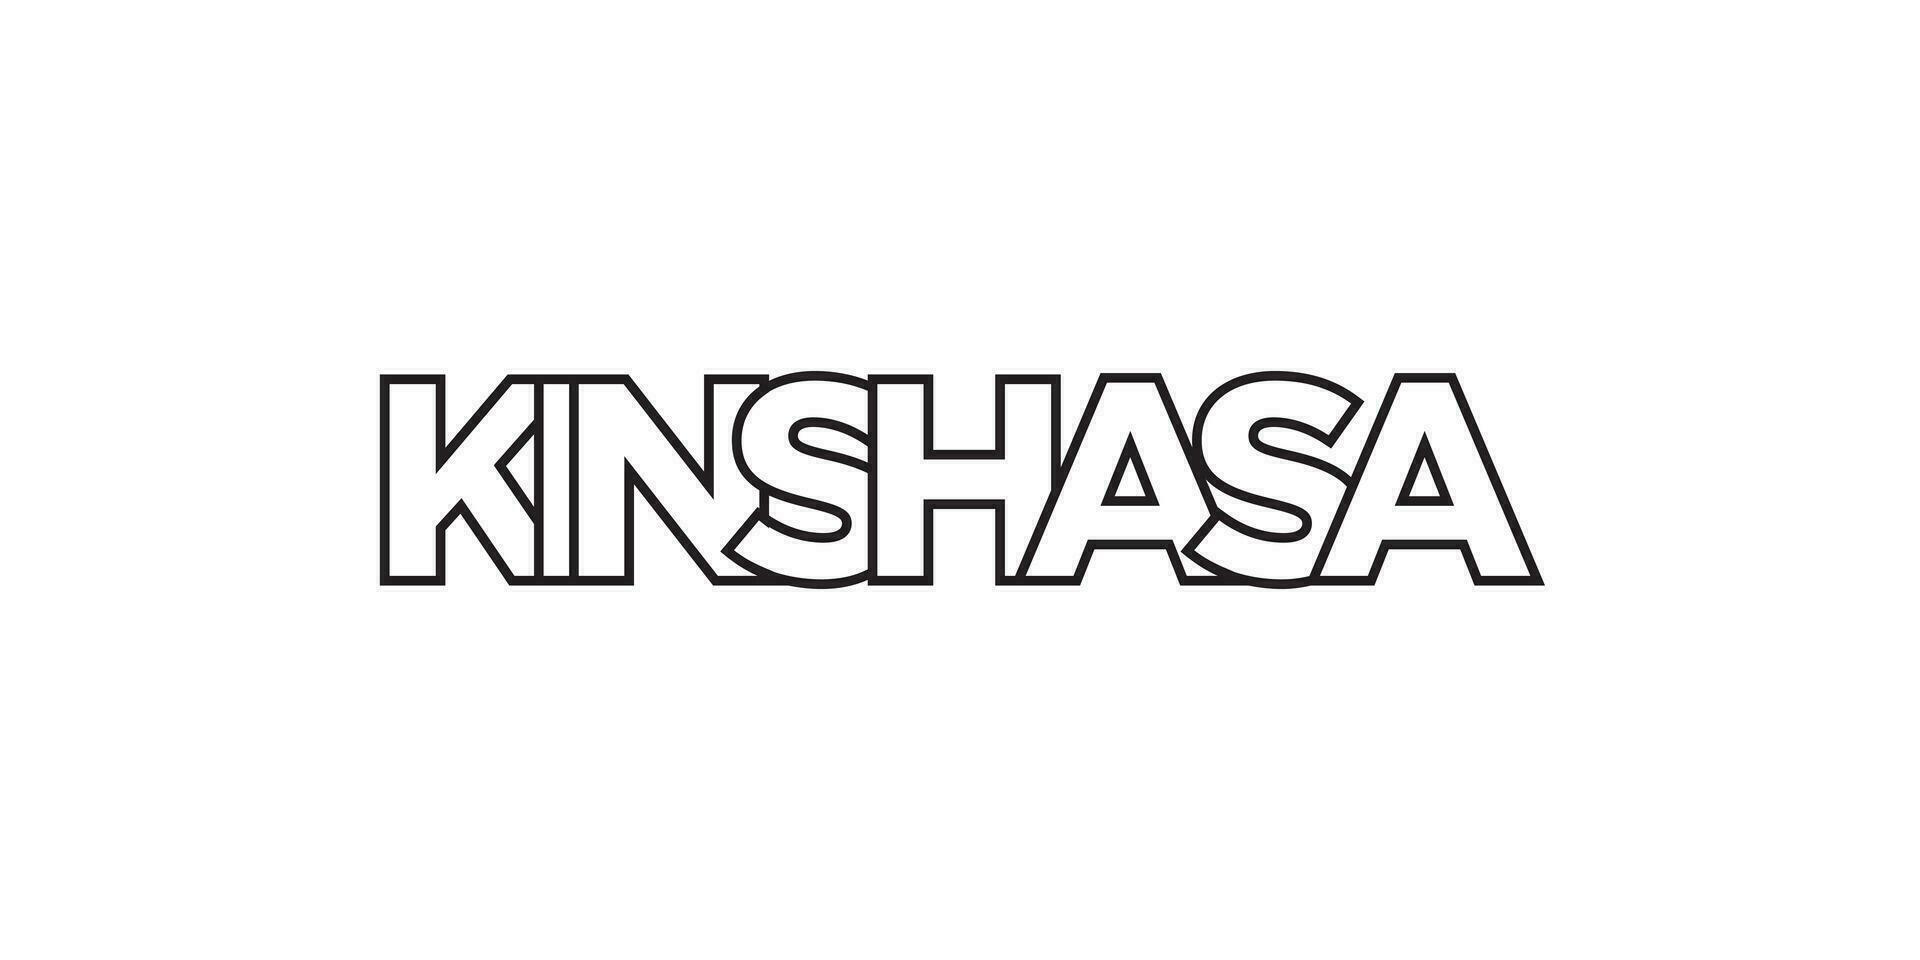 Kinshasa dans le Congo emblème. le conception Caractéristiques une géométrique style, vecteur illustration avec audacieux typographie dans une moderne Police de caractère. le graphique slogan caractères.